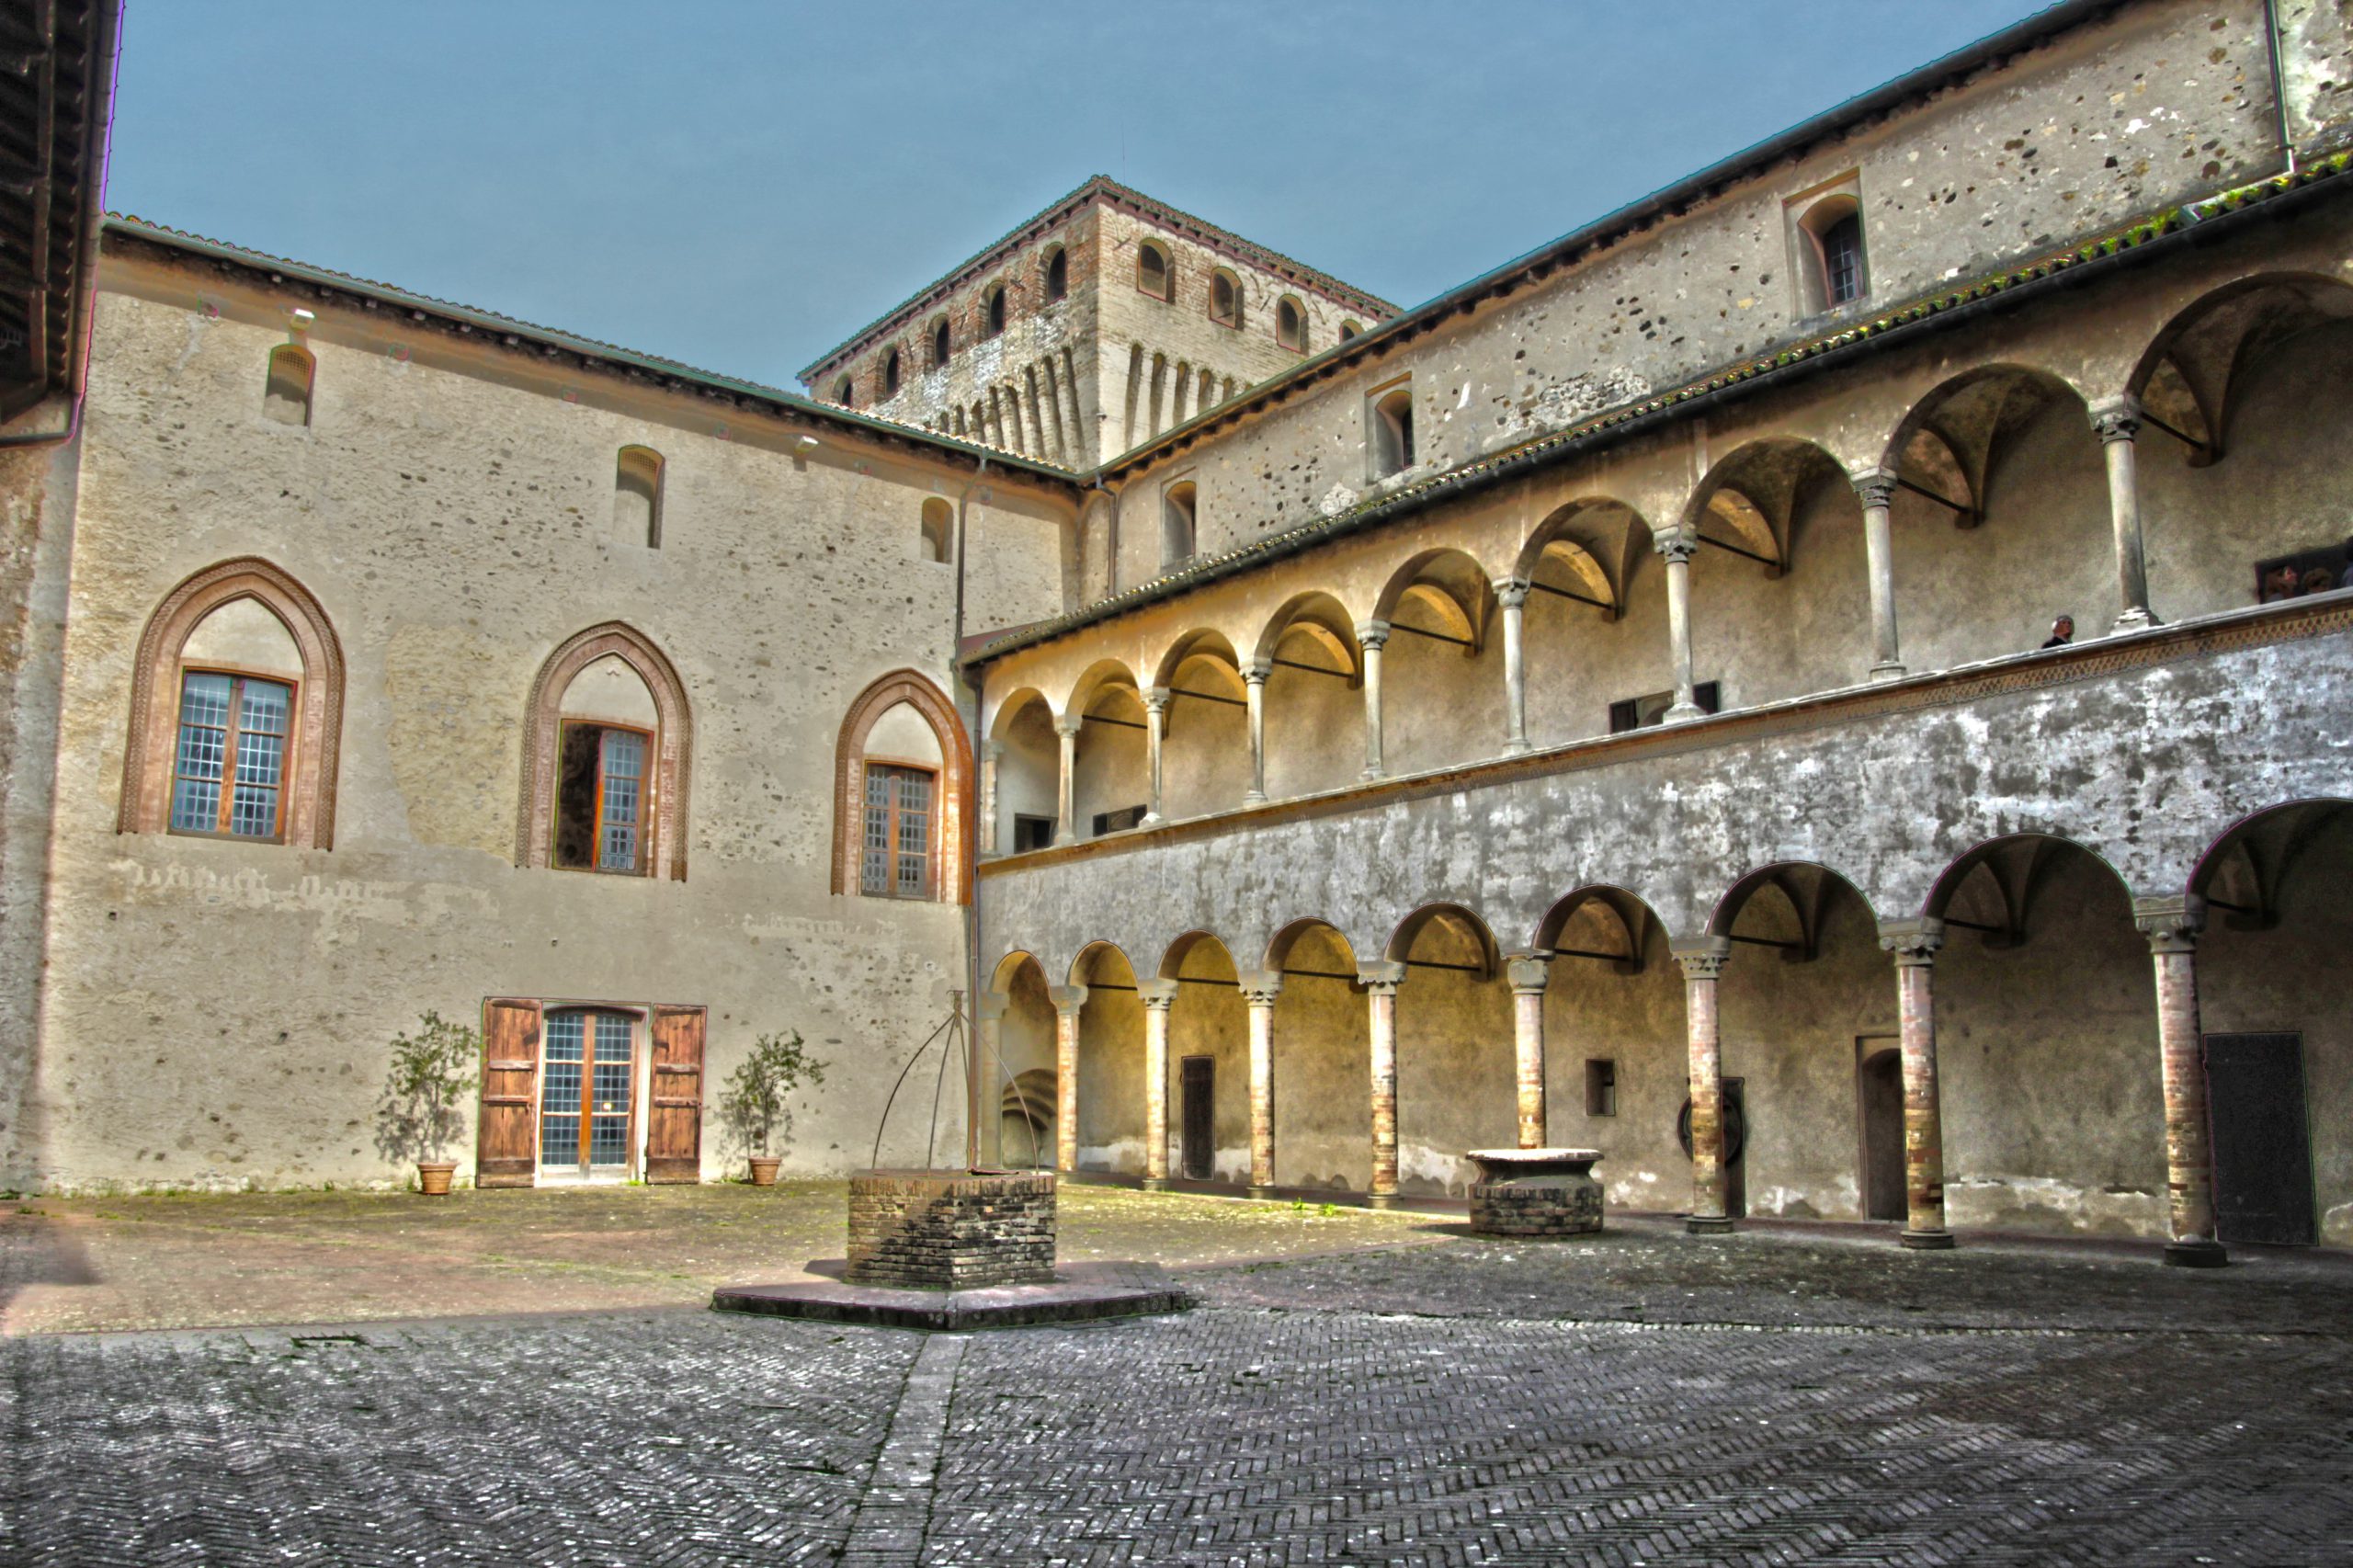 Castello di Torrechiara (Langhirano, Parma) - Cortile interno